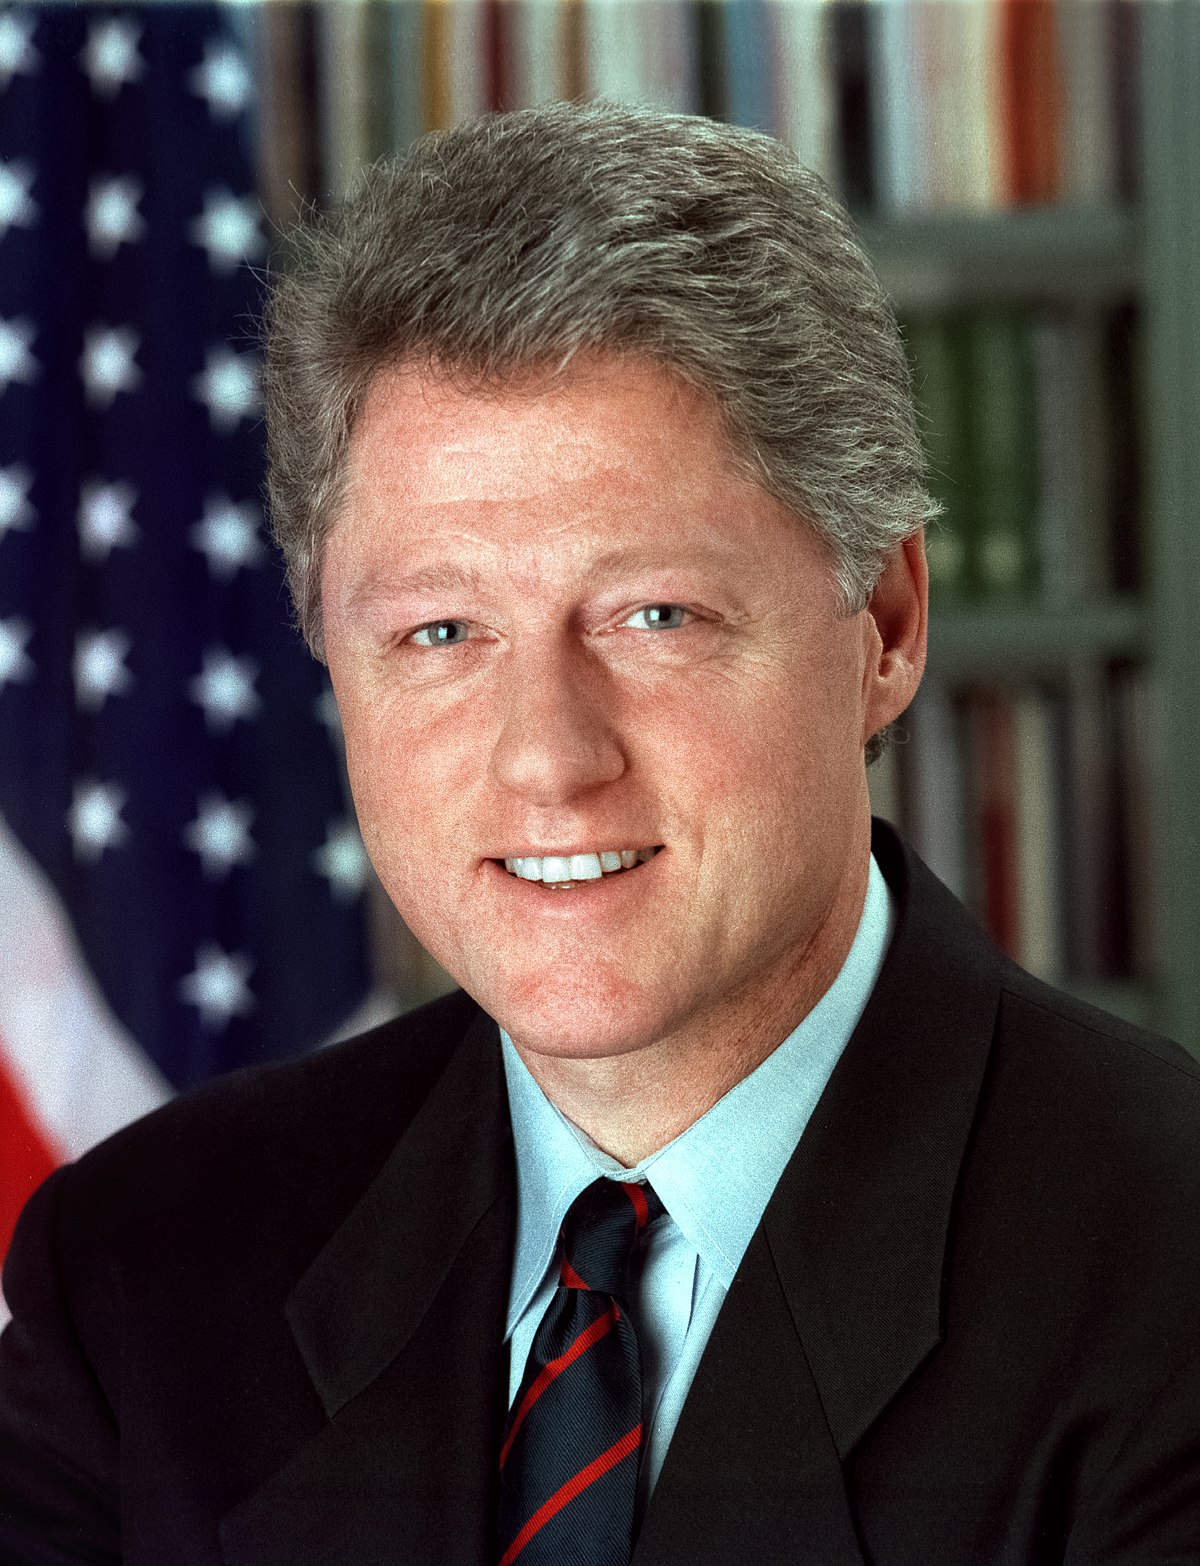 Bill Clinton - Wikipedia